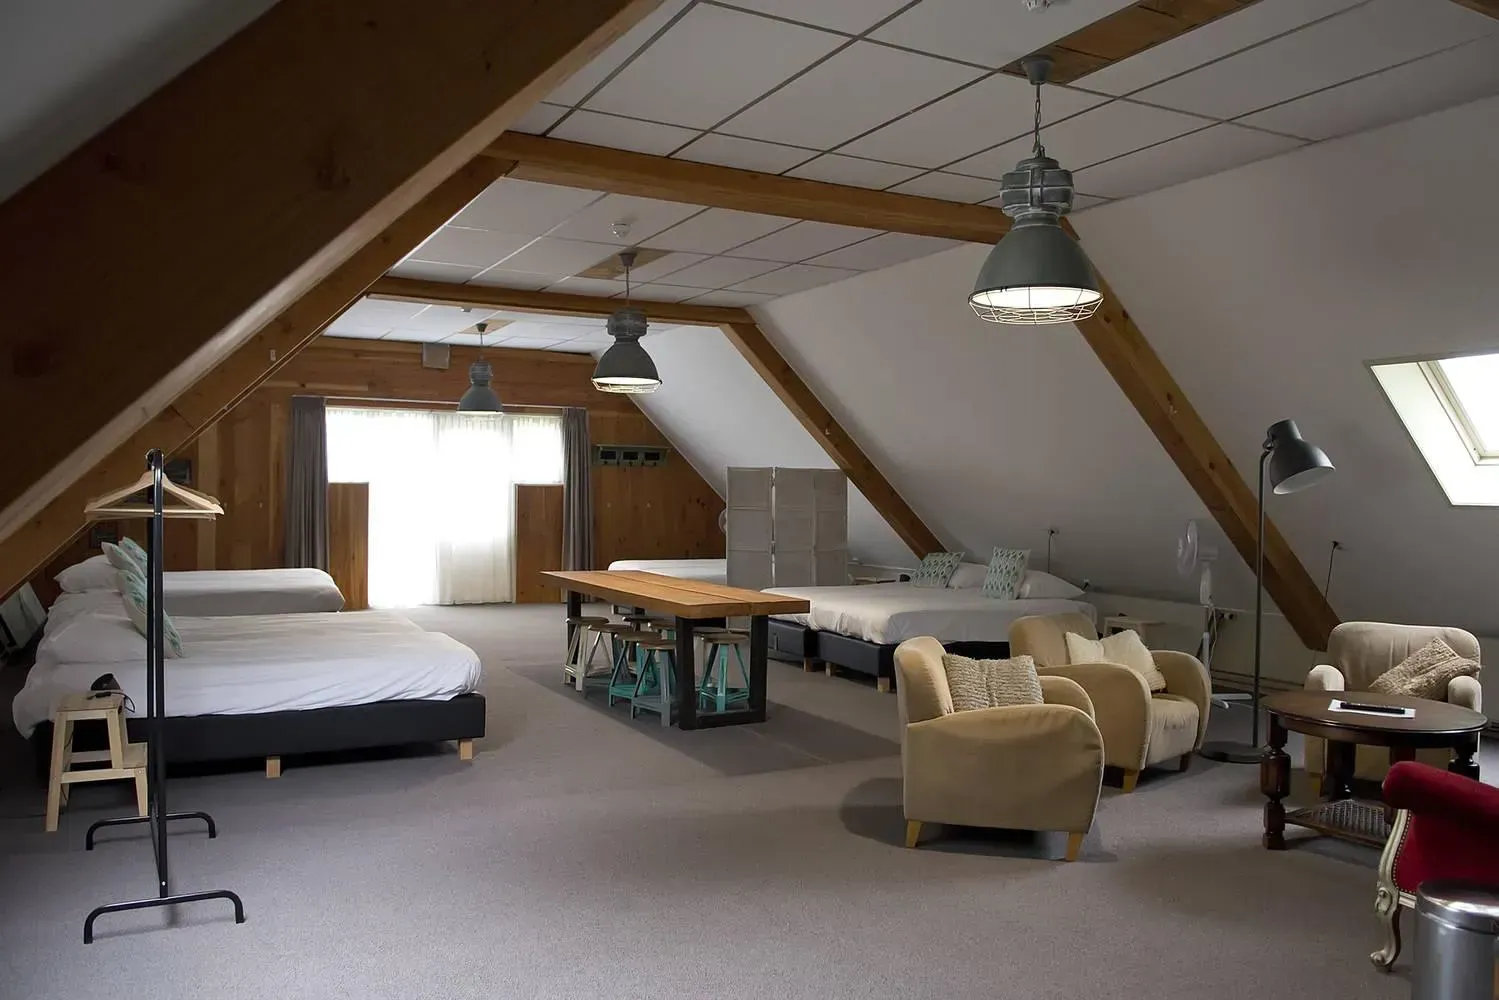 Verken Drenthe met een verblijf in 1 van onze hotelkamers